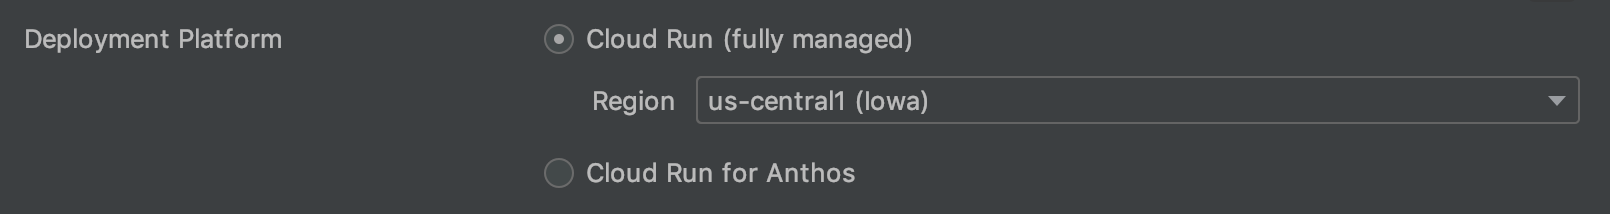 Opzioni della piattaforma di deployment: completamente gestito (scelto) e Anthos su GKE con una regione specificata